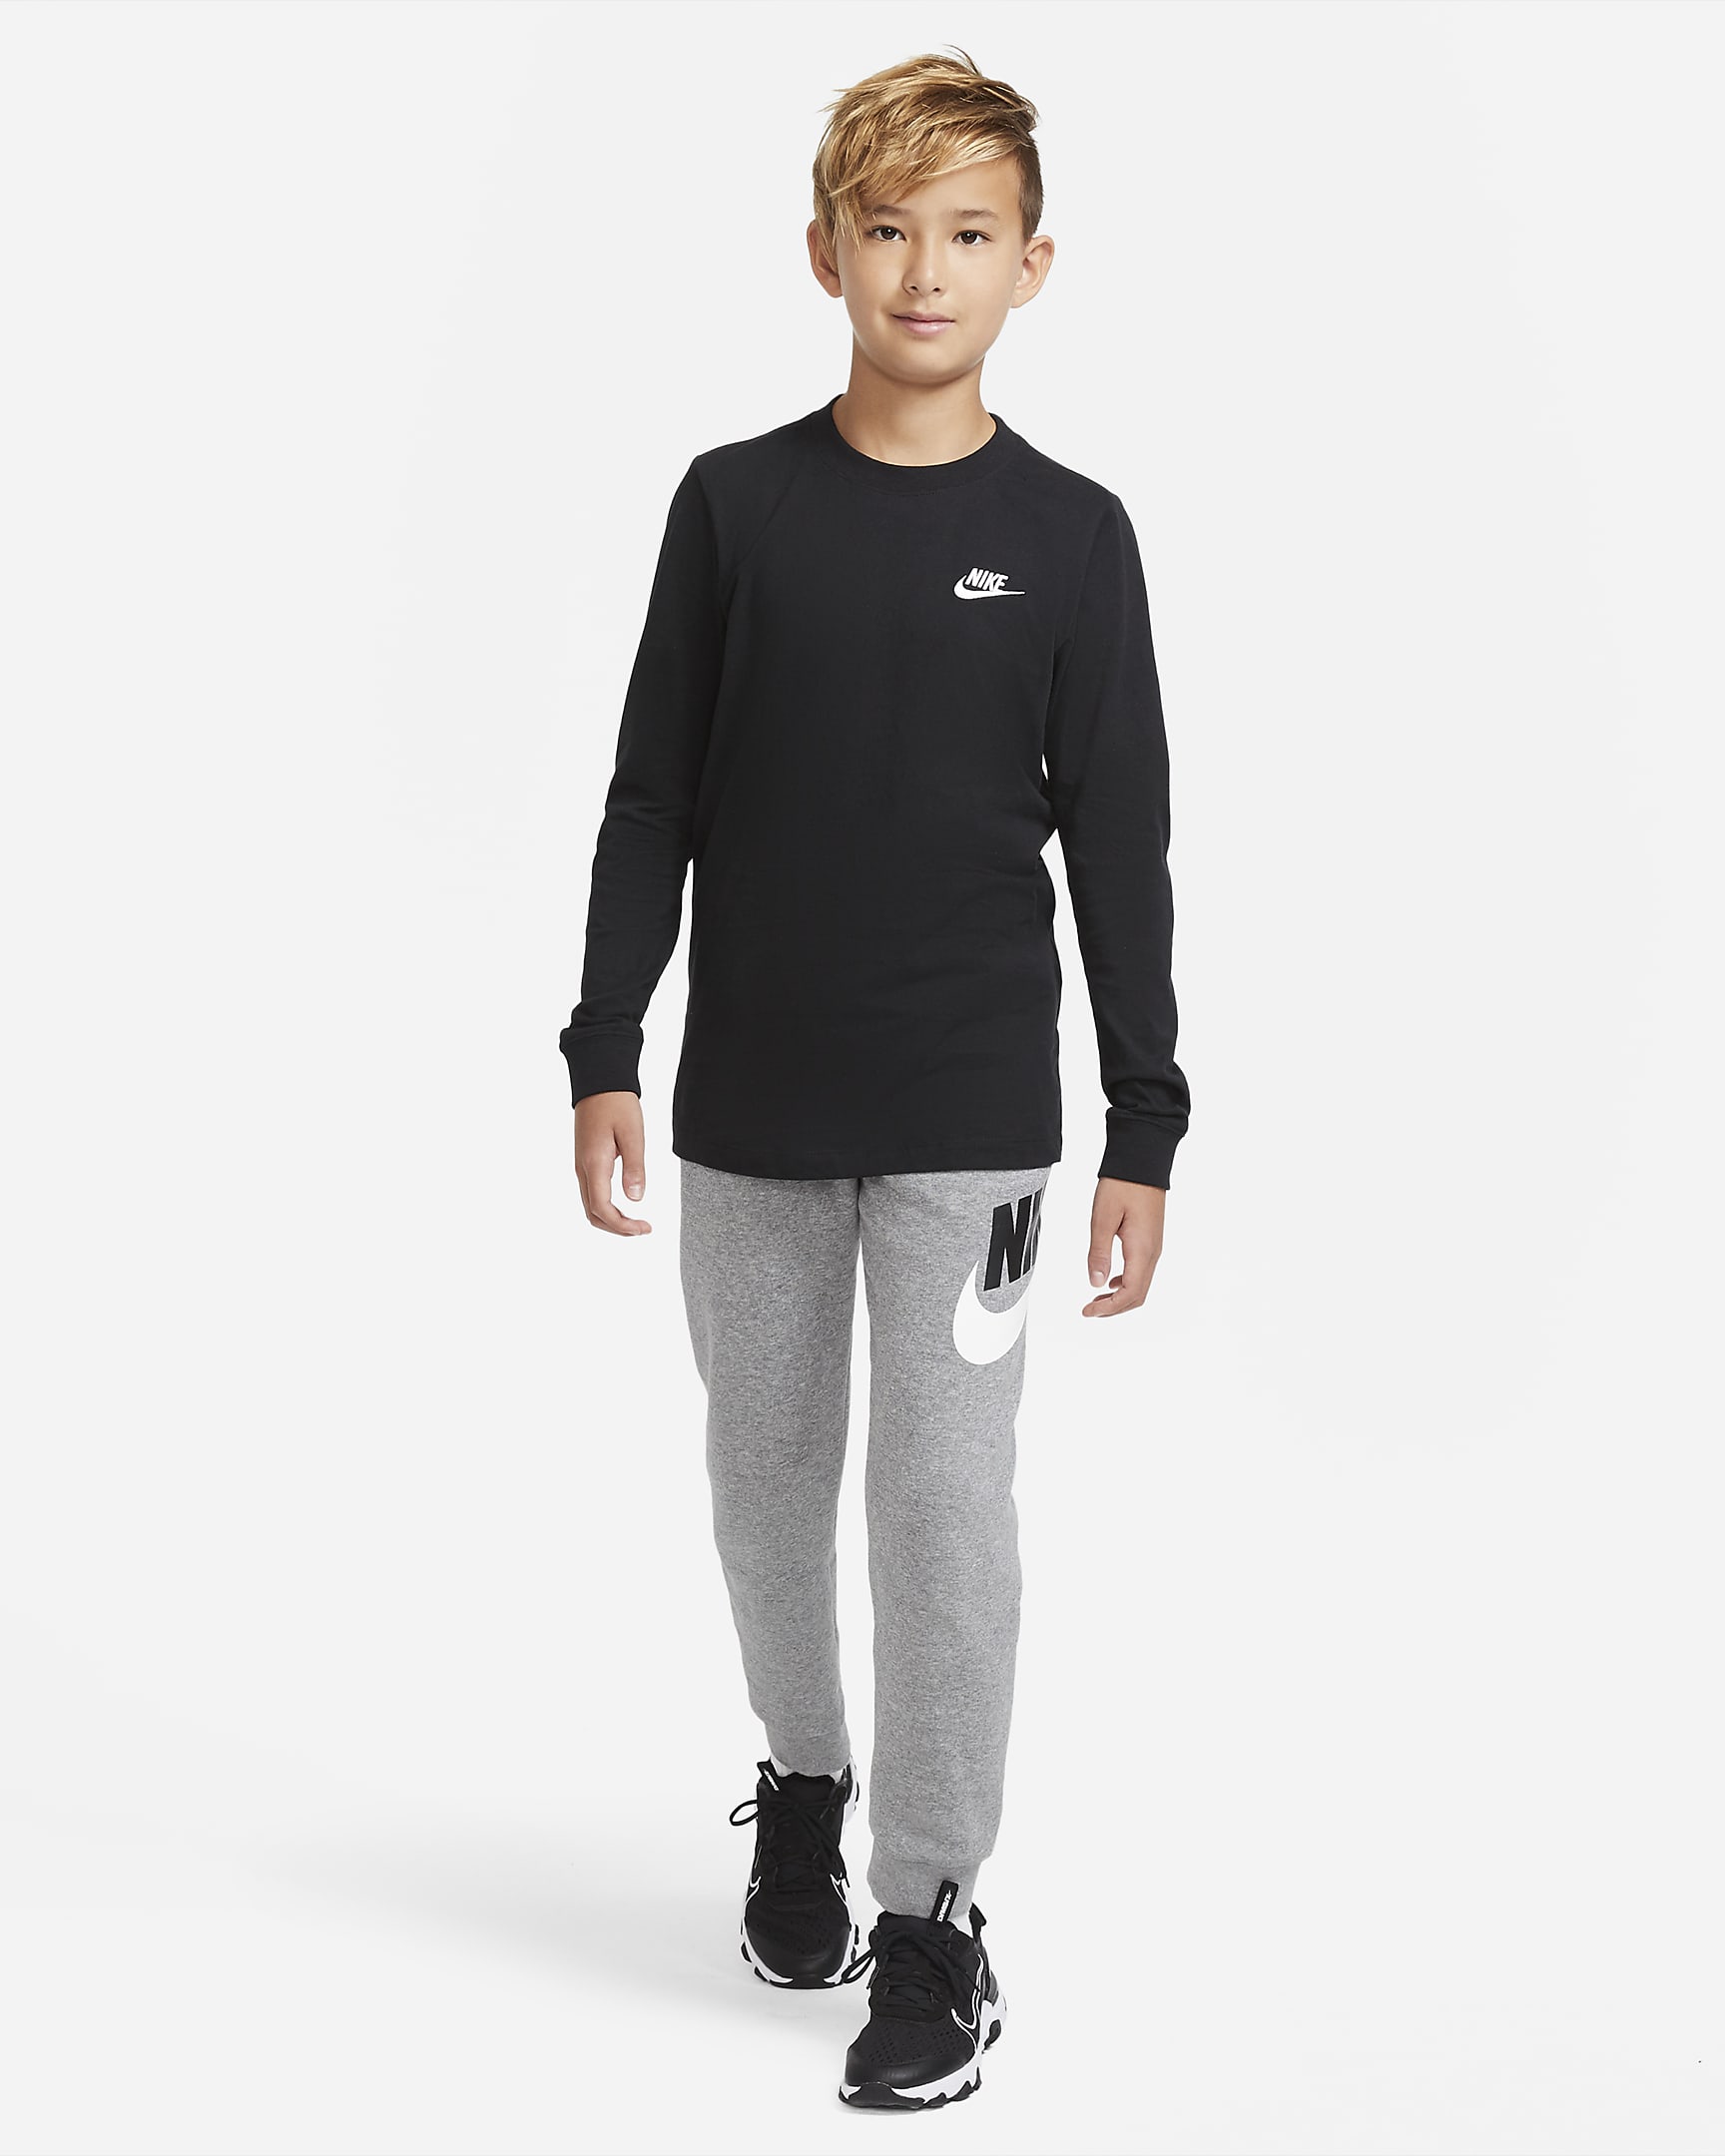 Nike Sportswear Older Kids' (Boys') Long-Sleeve T-Shirt. Nike UK